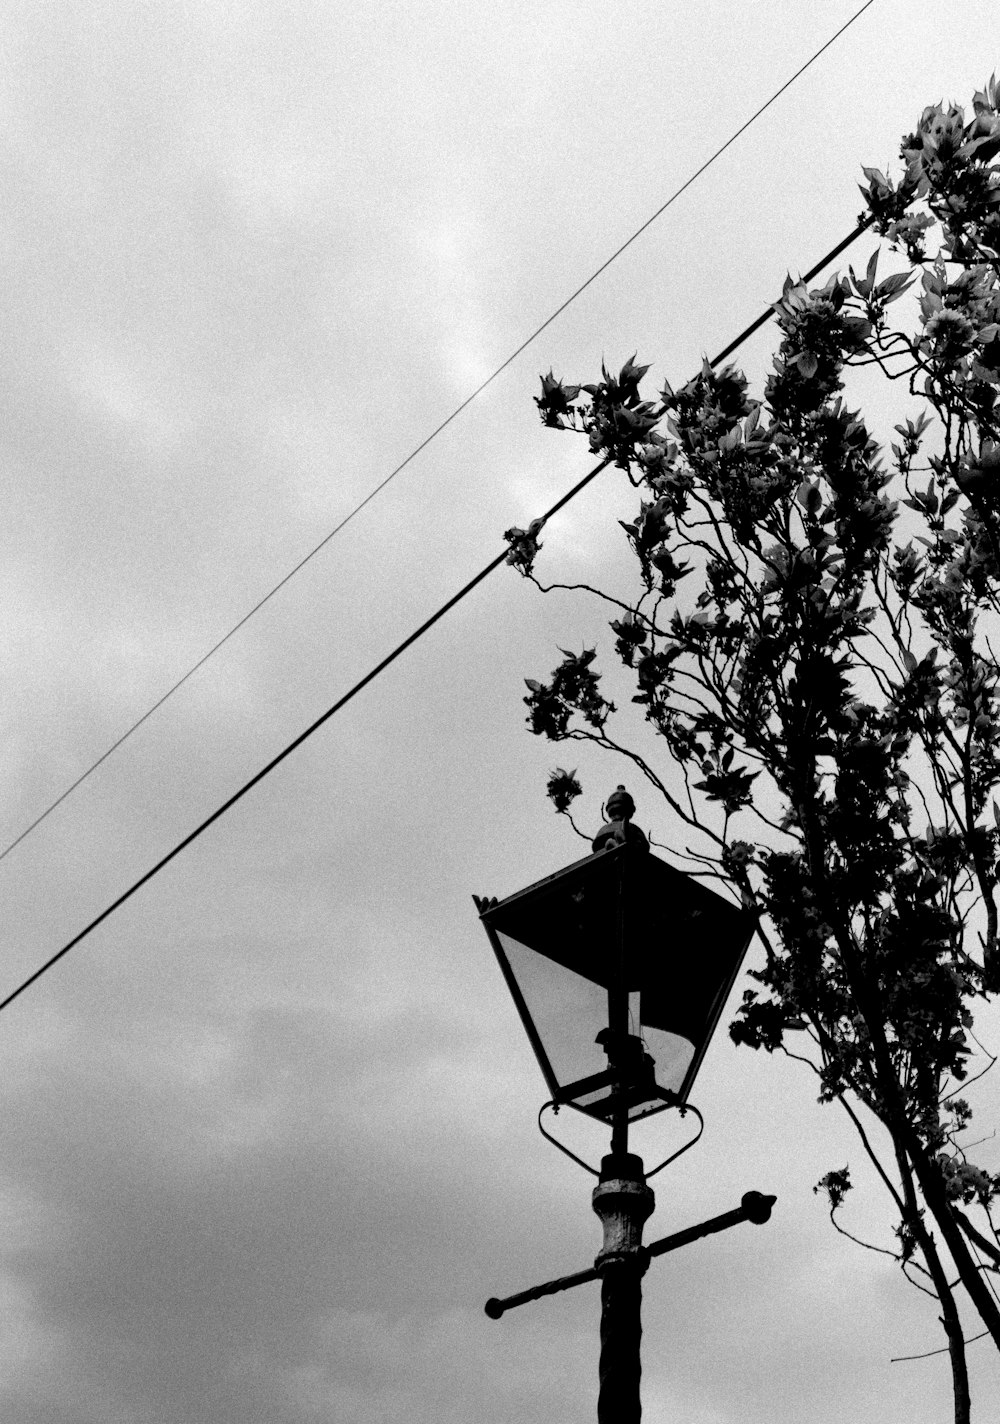 Silueta de pájaro en cable eléctrico bajo cielo nublado durante el día